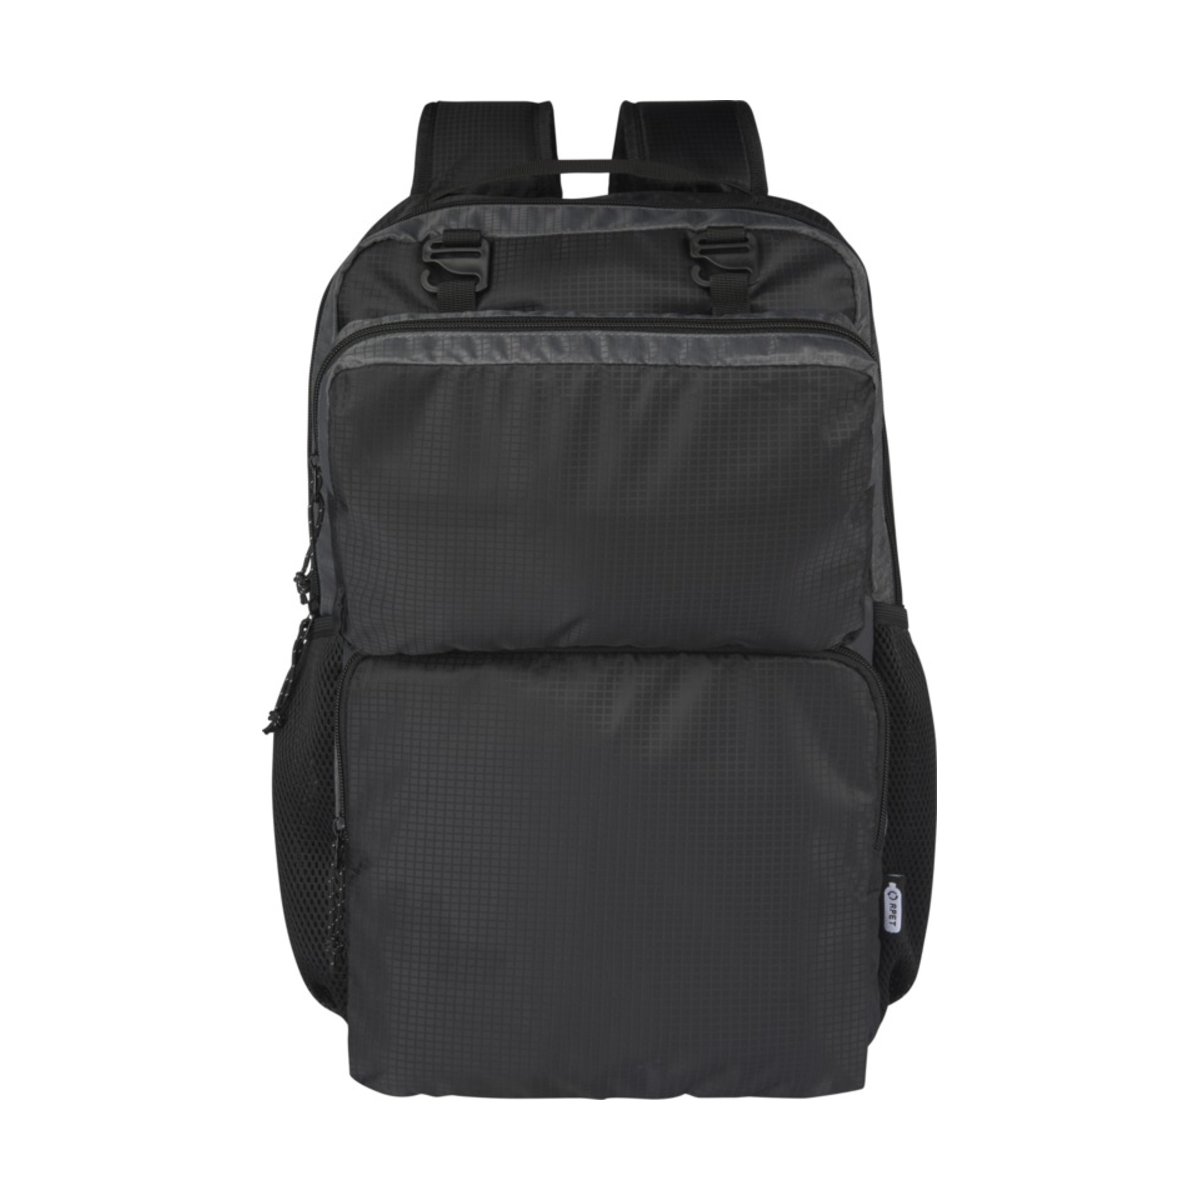 Trailhead plecak na 15-calowego laptopa o pojemności 14 l z recyklingu z certyfikatem GRS